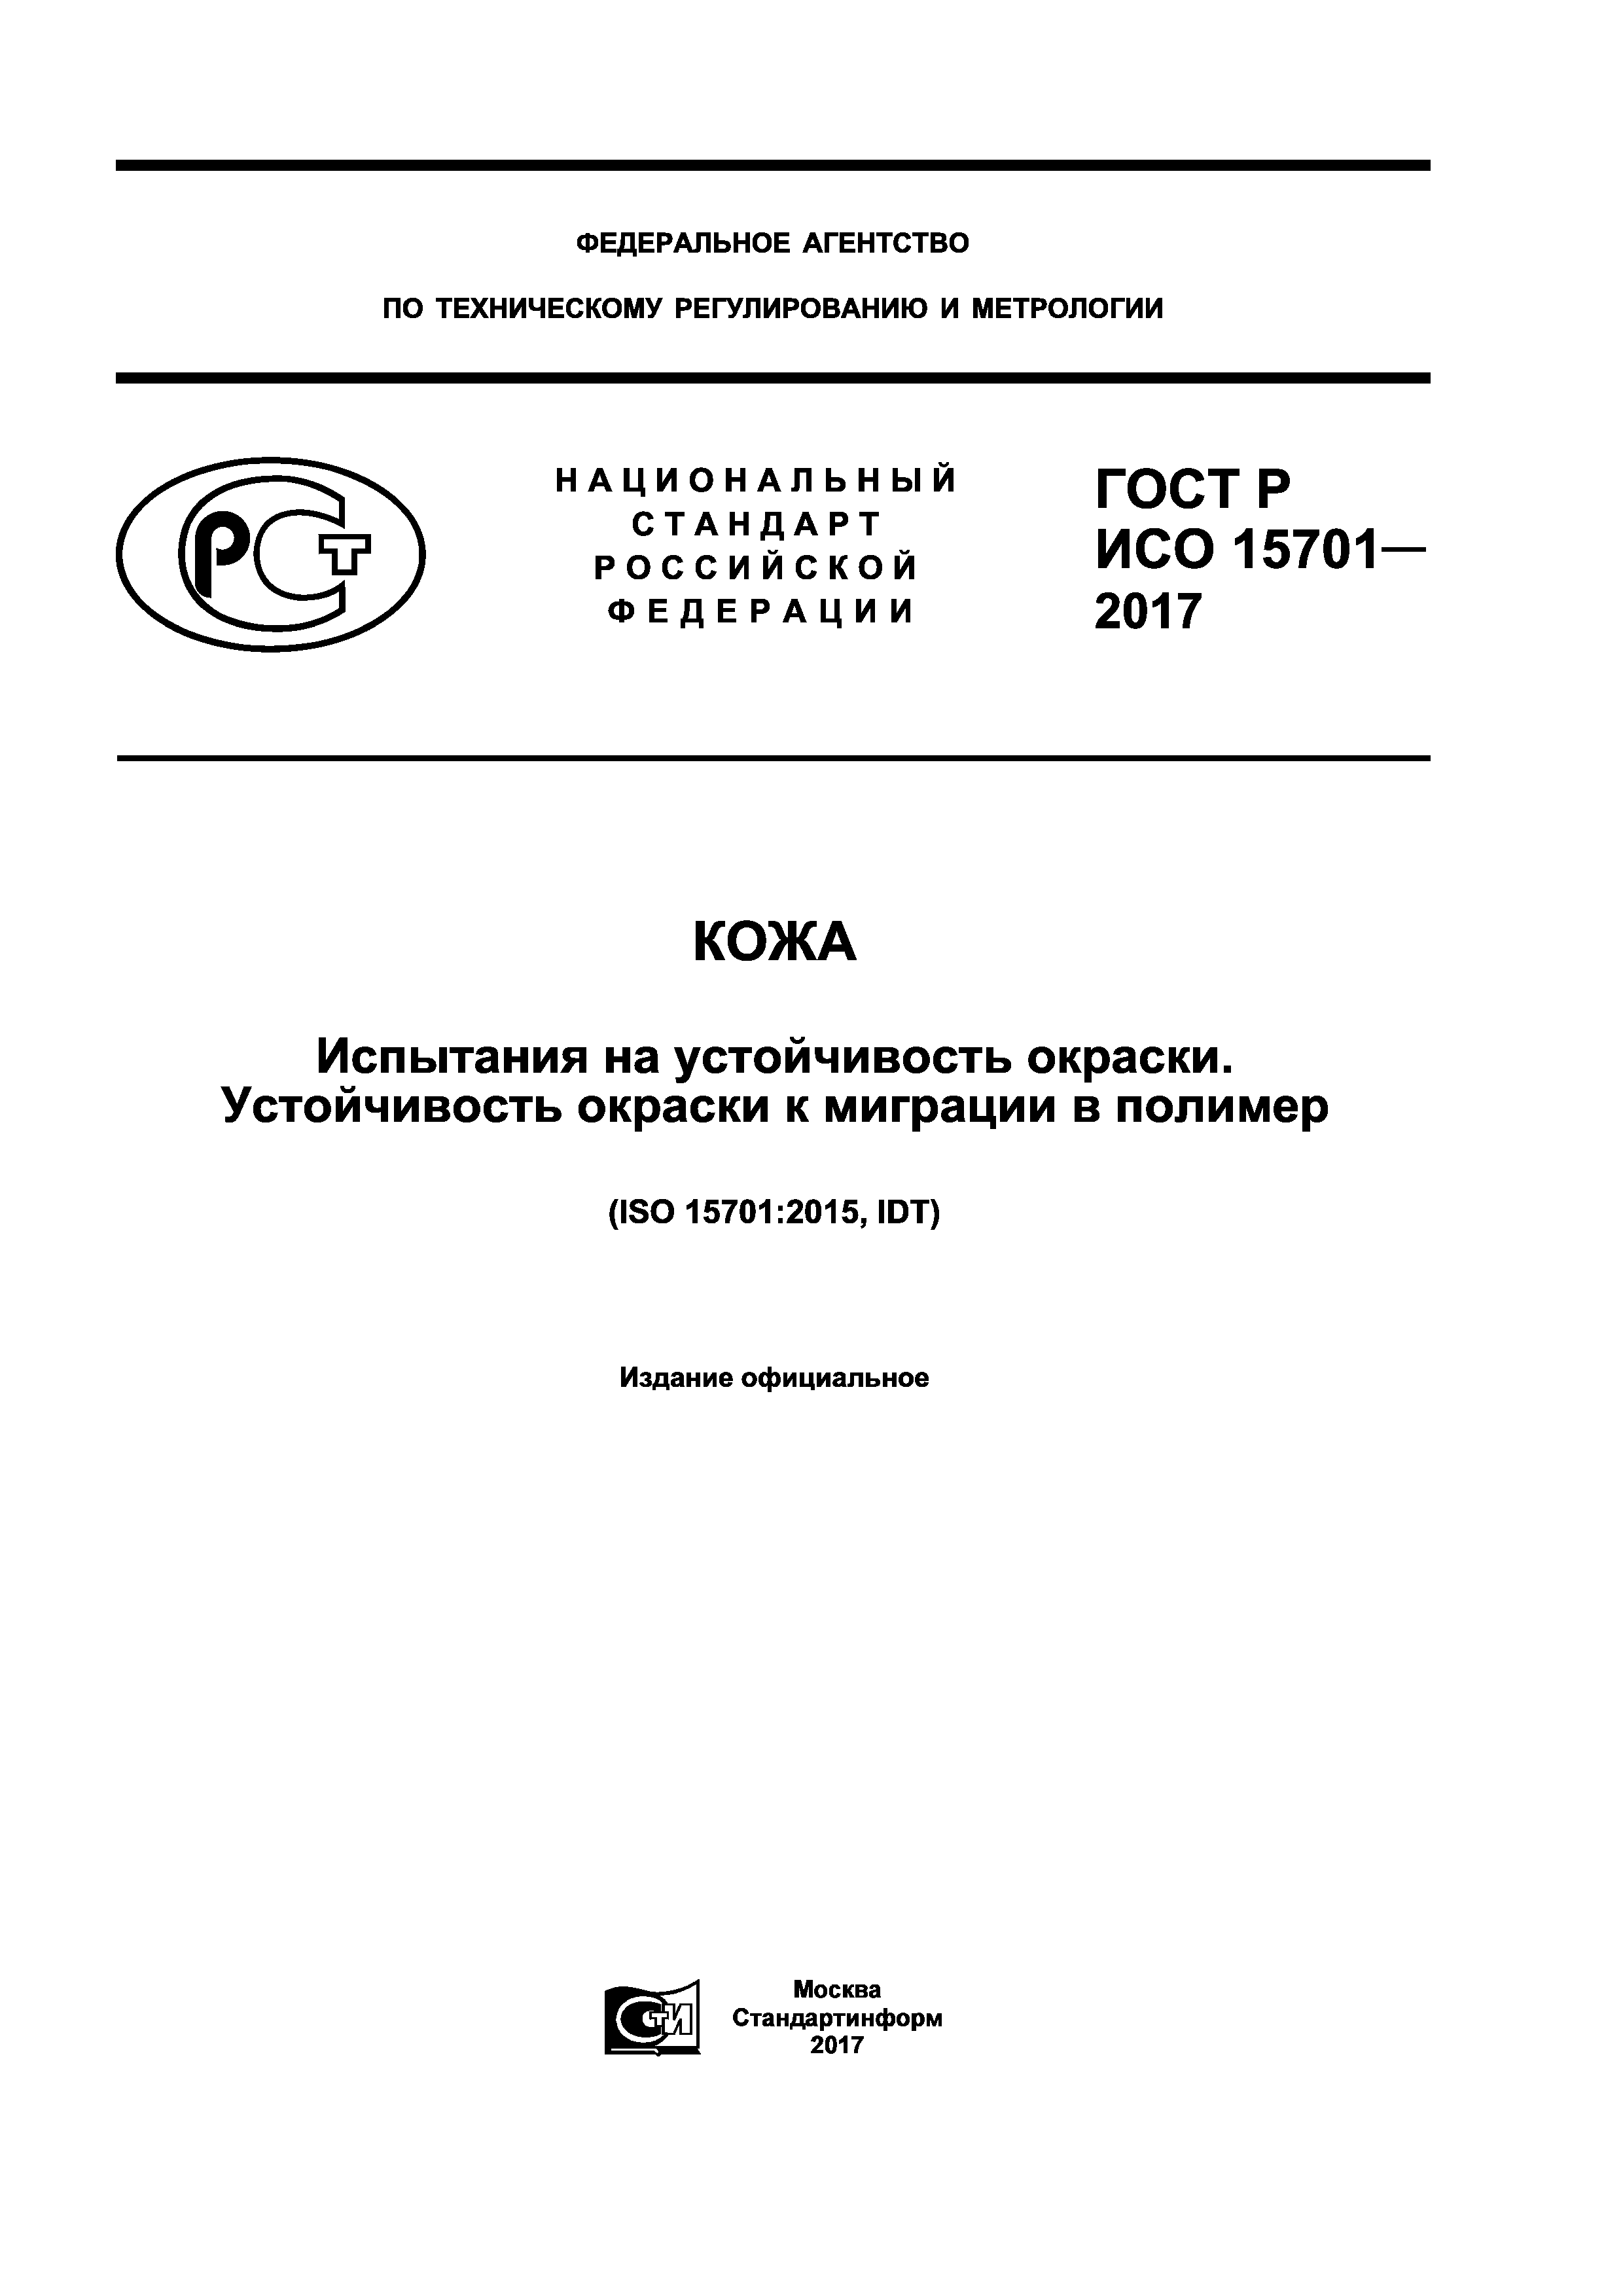 ГОСТ Р ИСО 15701-2017